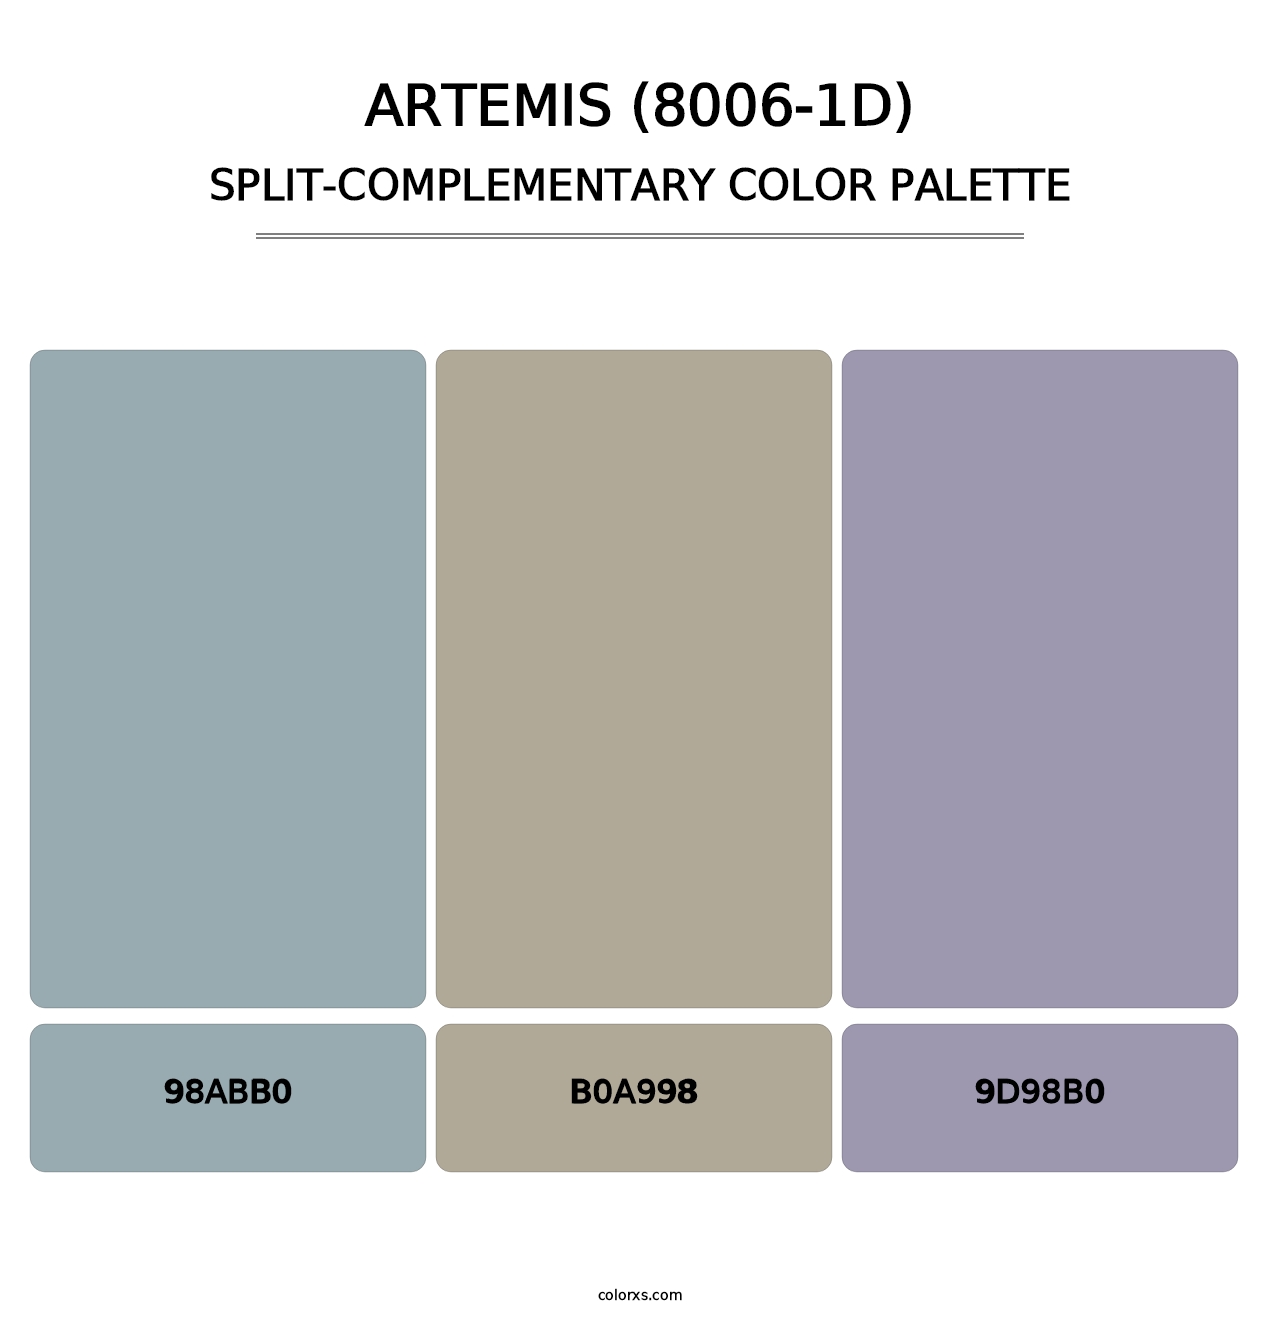 Artemis (8006-1D) - Split-Complementary Color Palette